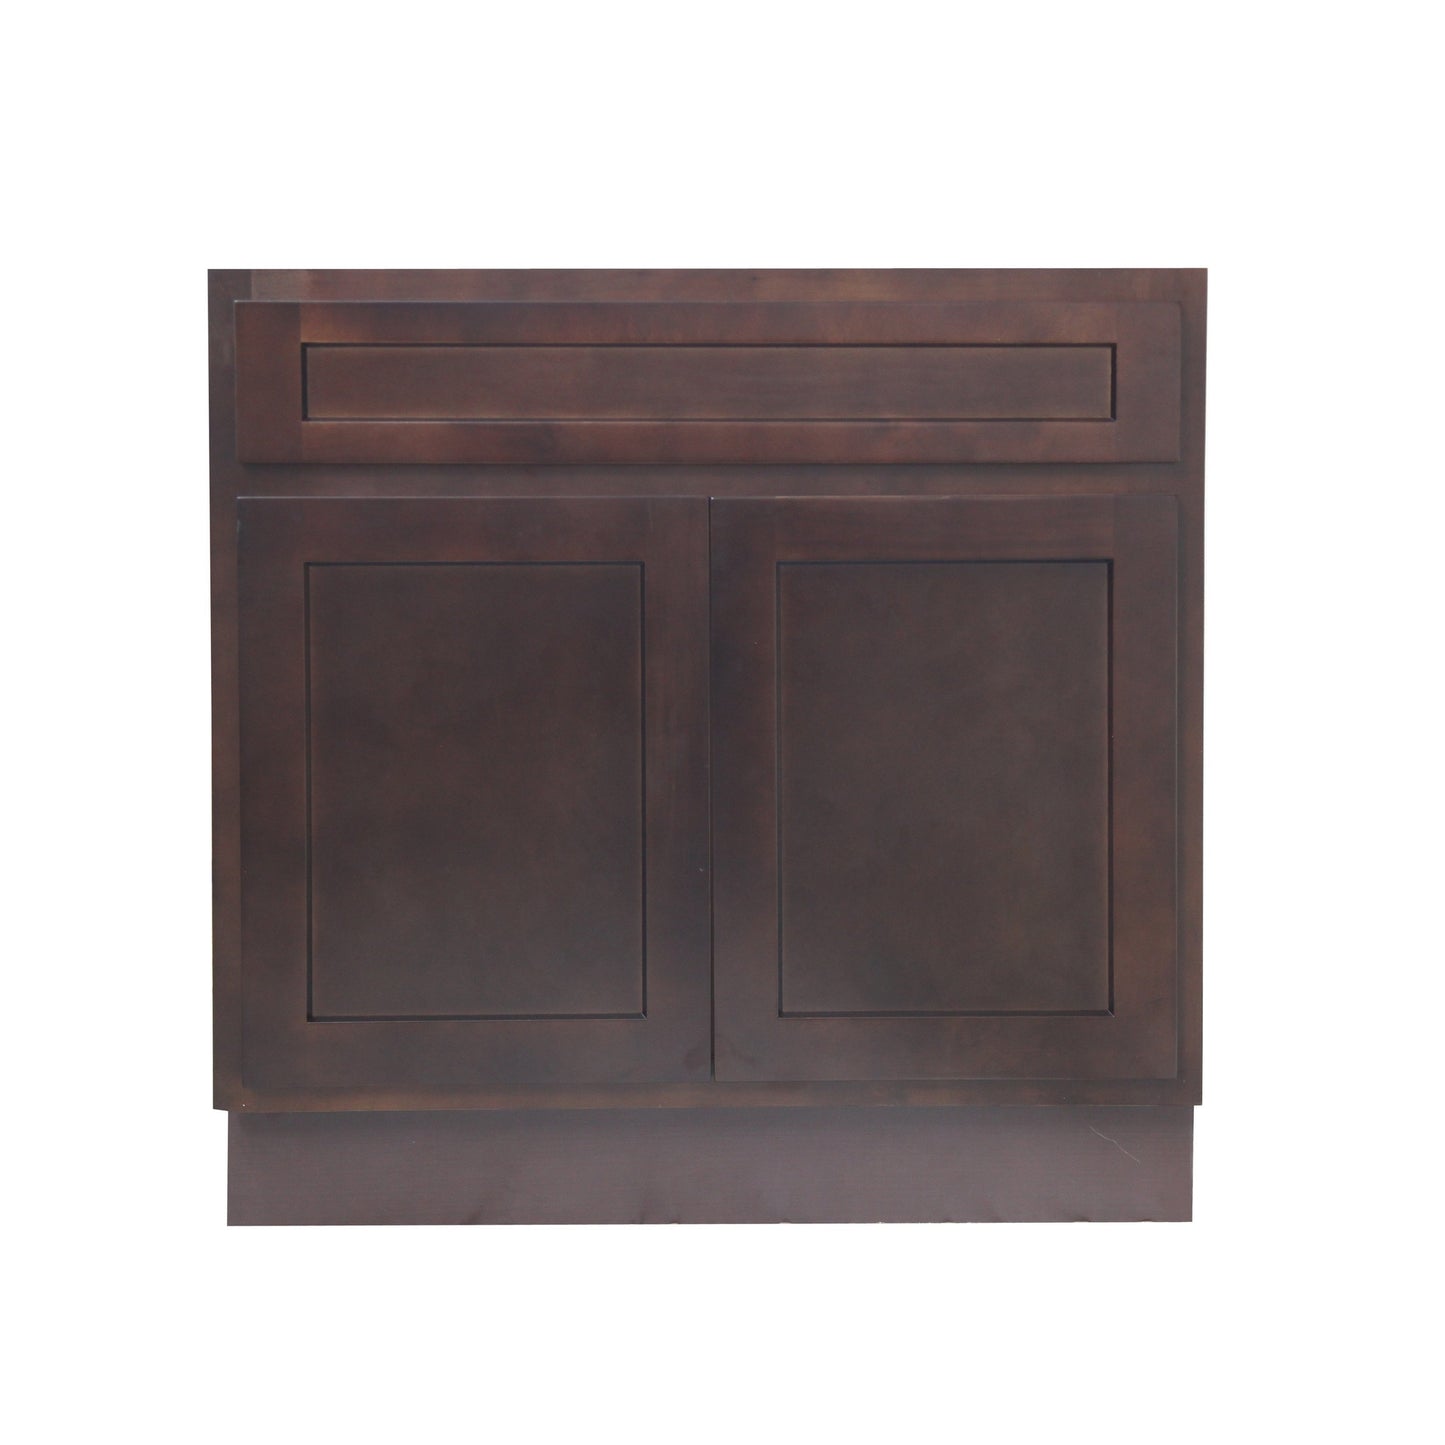 Vanity Art 30" Brown Freestanding Solid Wood Vanity Cabinet With Double Soft Closing Doors